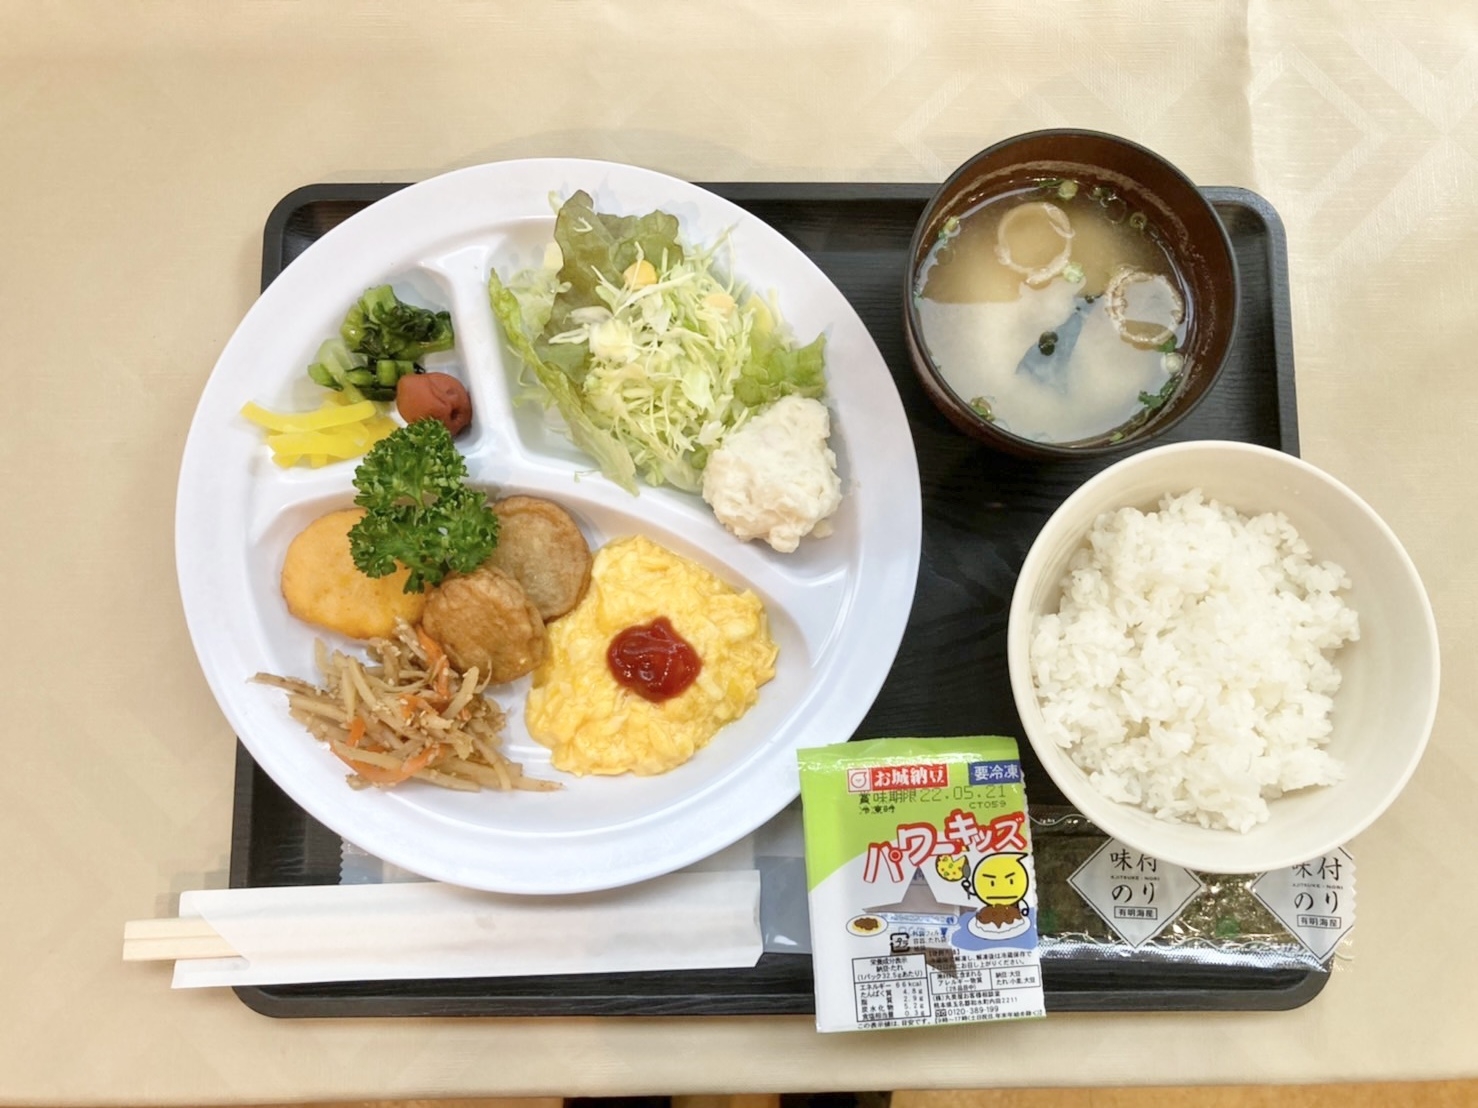 【日曜日限定】☆スマイルサンデープラン☆※朝食無料サービス